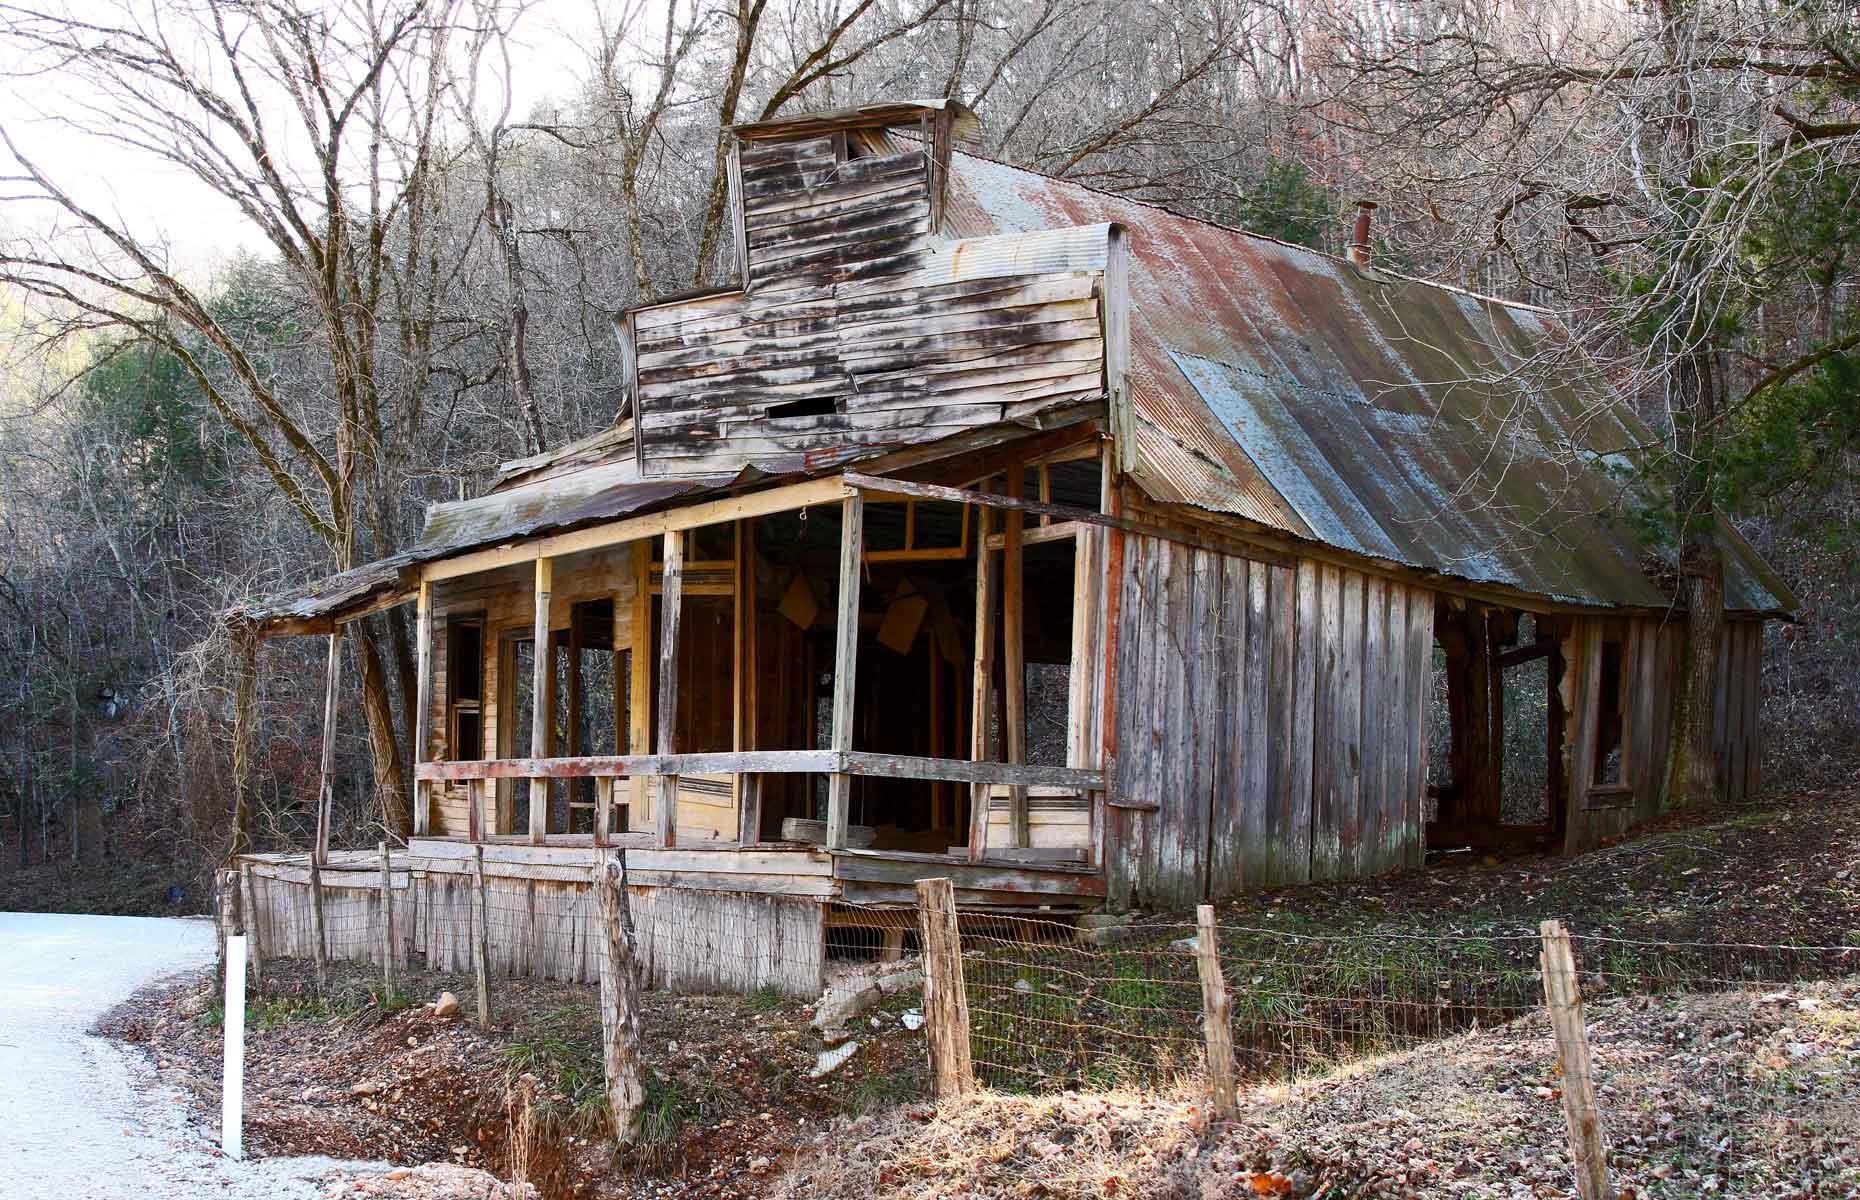 Arkansas: Rush ghost town, near Yellville